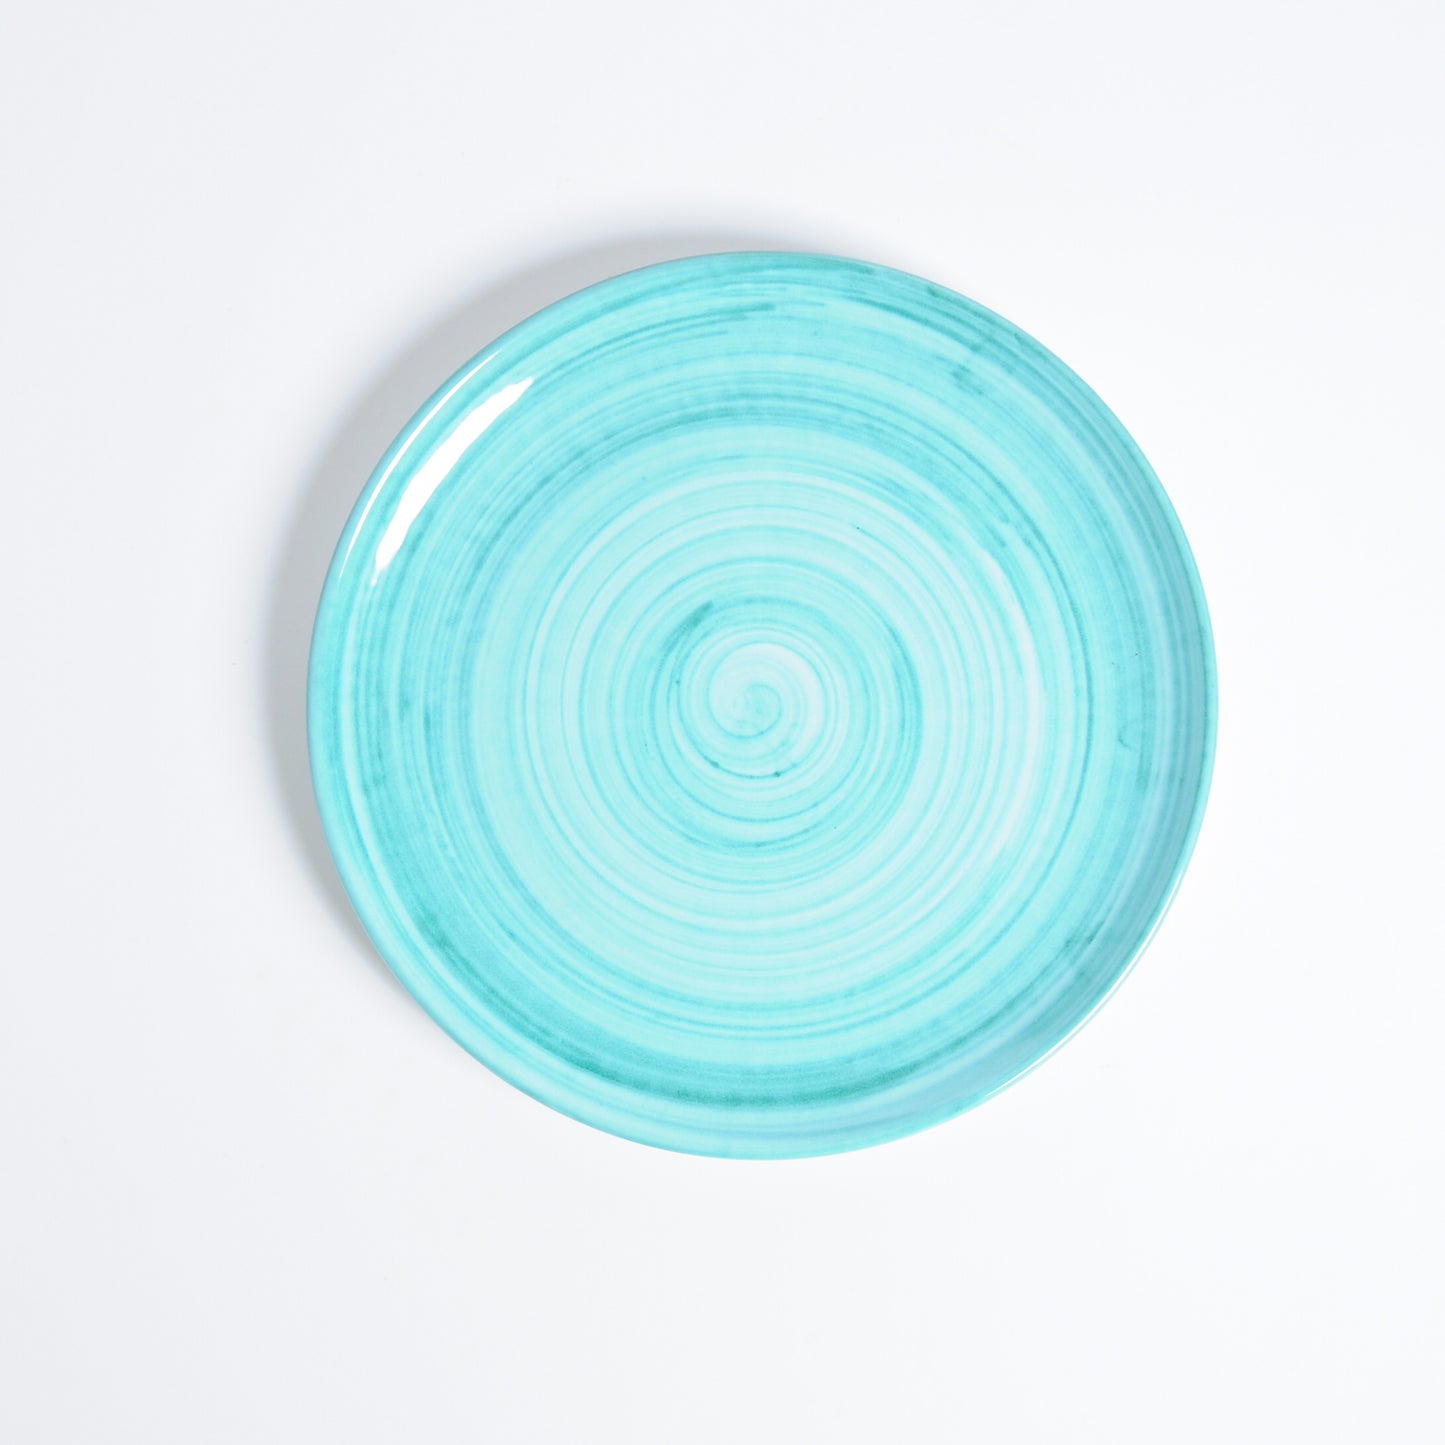 Turquoise brushed flat dish